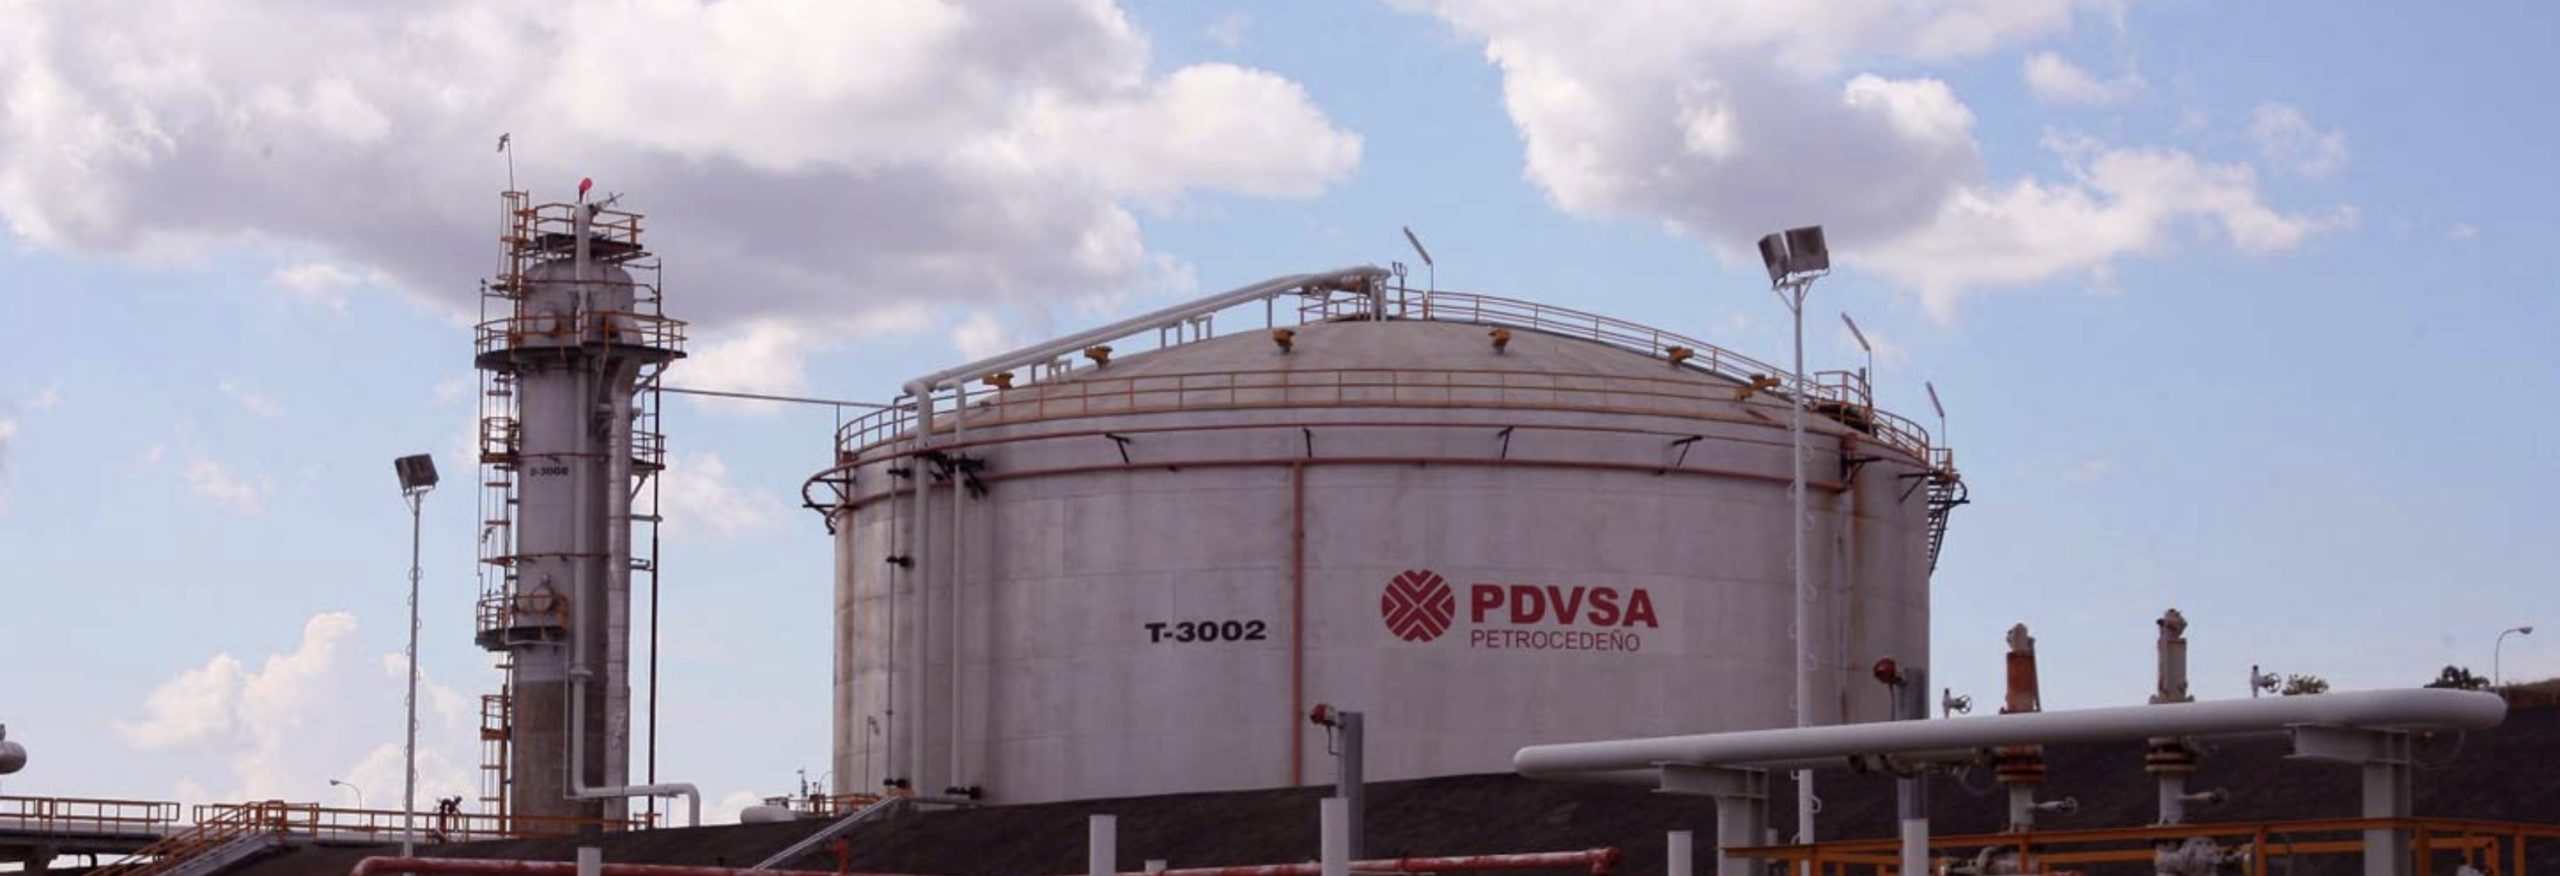 Sin tanques para almacenar y sin clientes, PDVSA paralizará su escasa producción